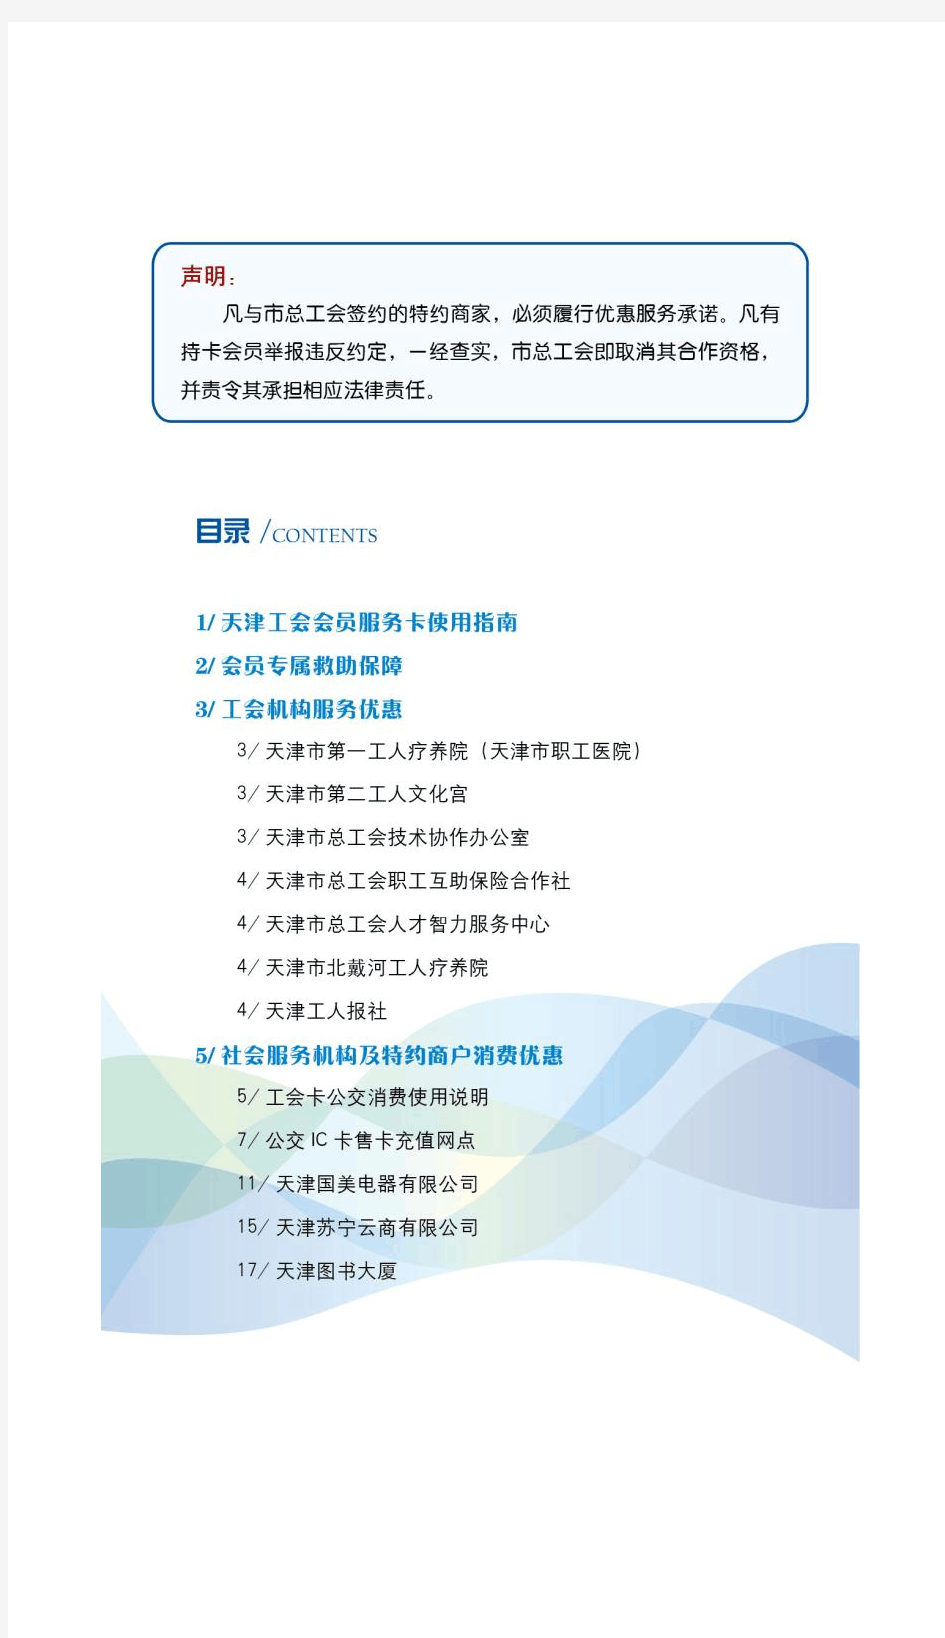 天津工会会员服务卡使用指南(2016)